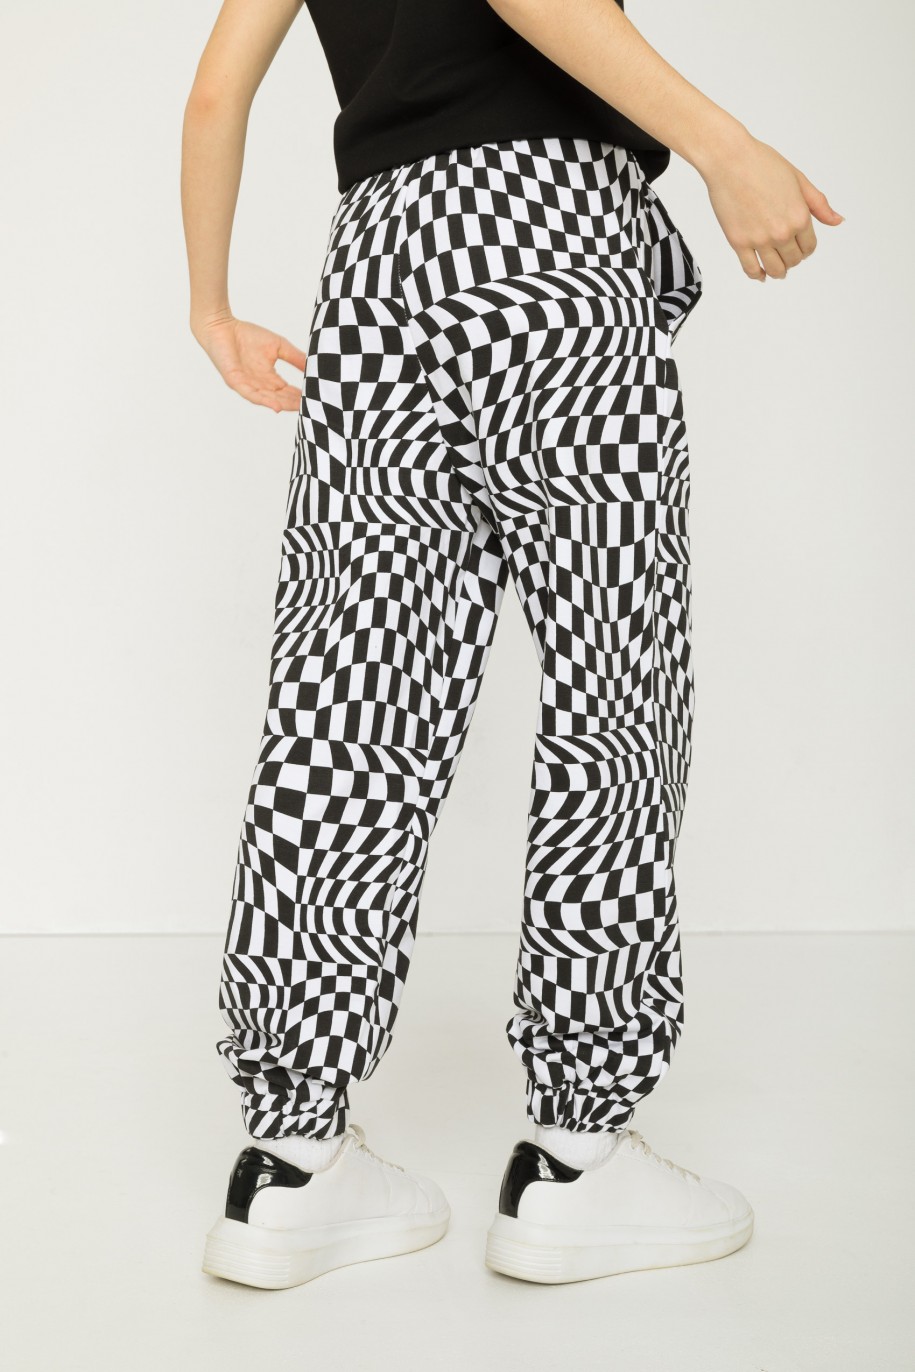 Czarno-białe spodnie dresowe z motywem szachownicy - 43295